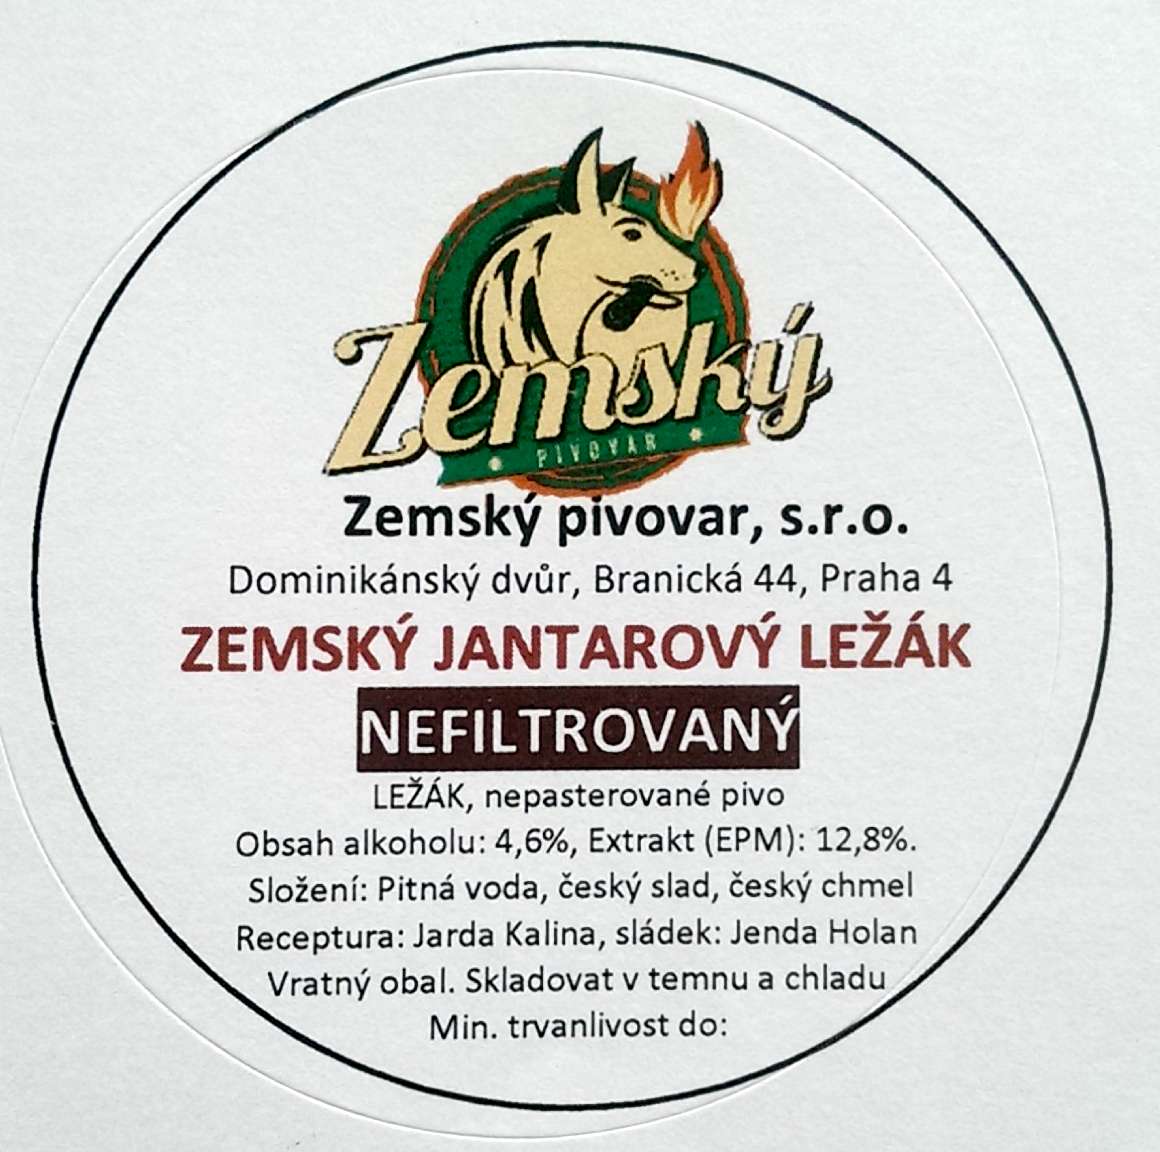 Zemsky Jantarovy lezak Etk.S